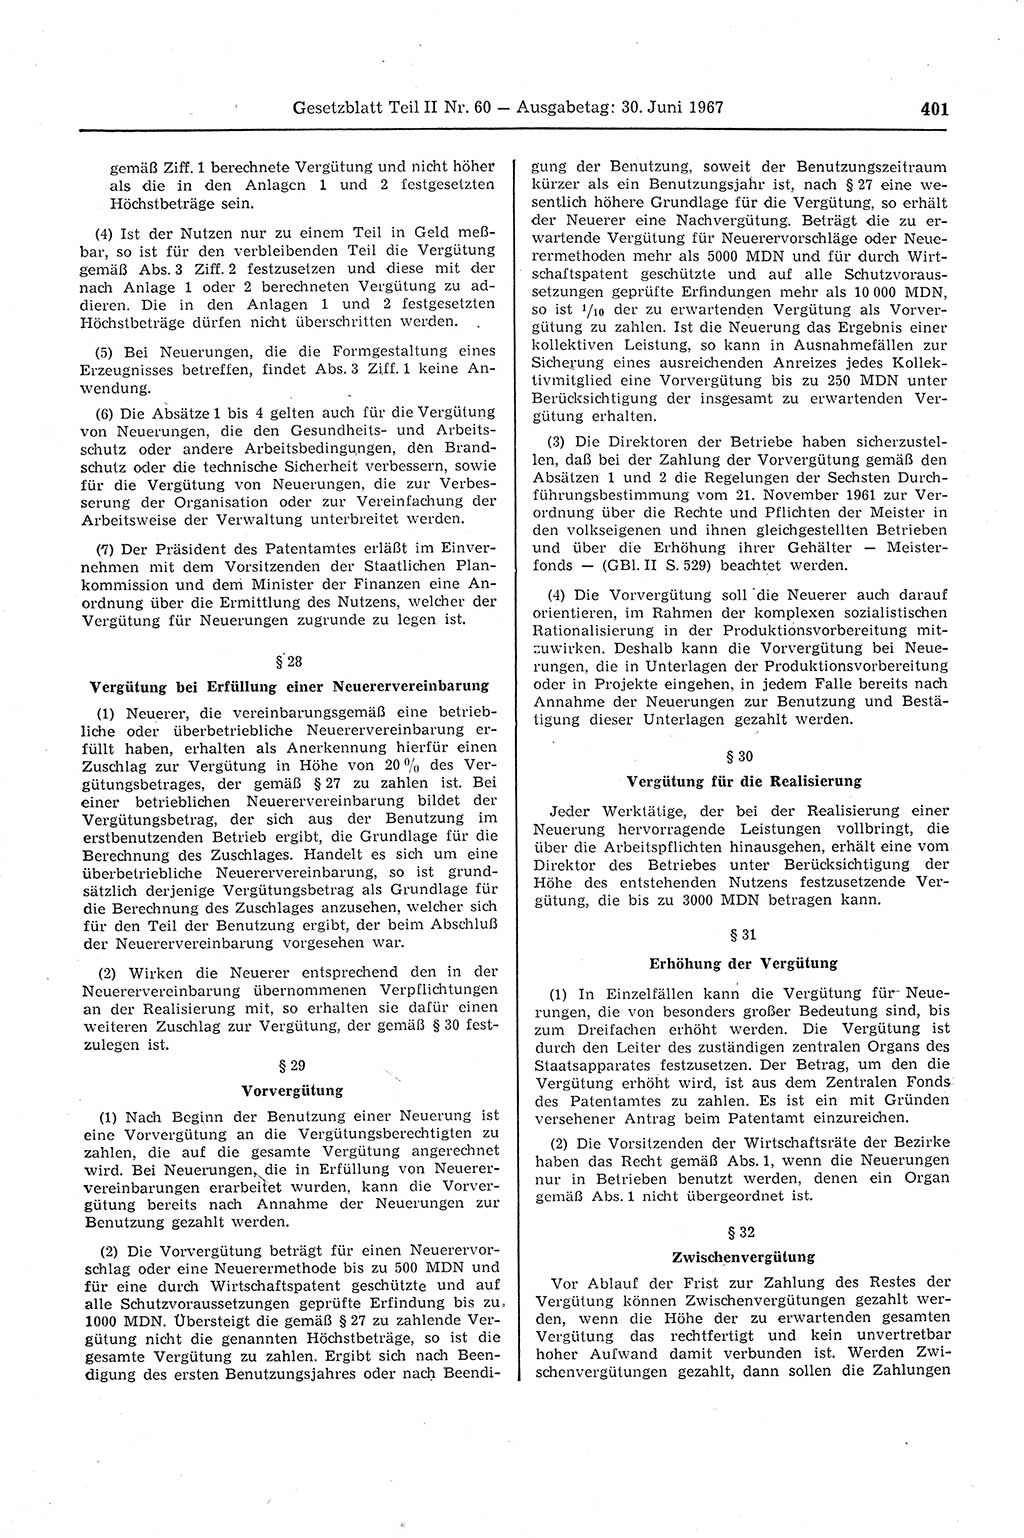 Gesetzblatt (GBl.) der Deutschen Demokratischen Republik (DDR) Teil ⅠⅠ 1967, Seite 401 (GBl. DDR ⅠⅠ 1967, S. 401)